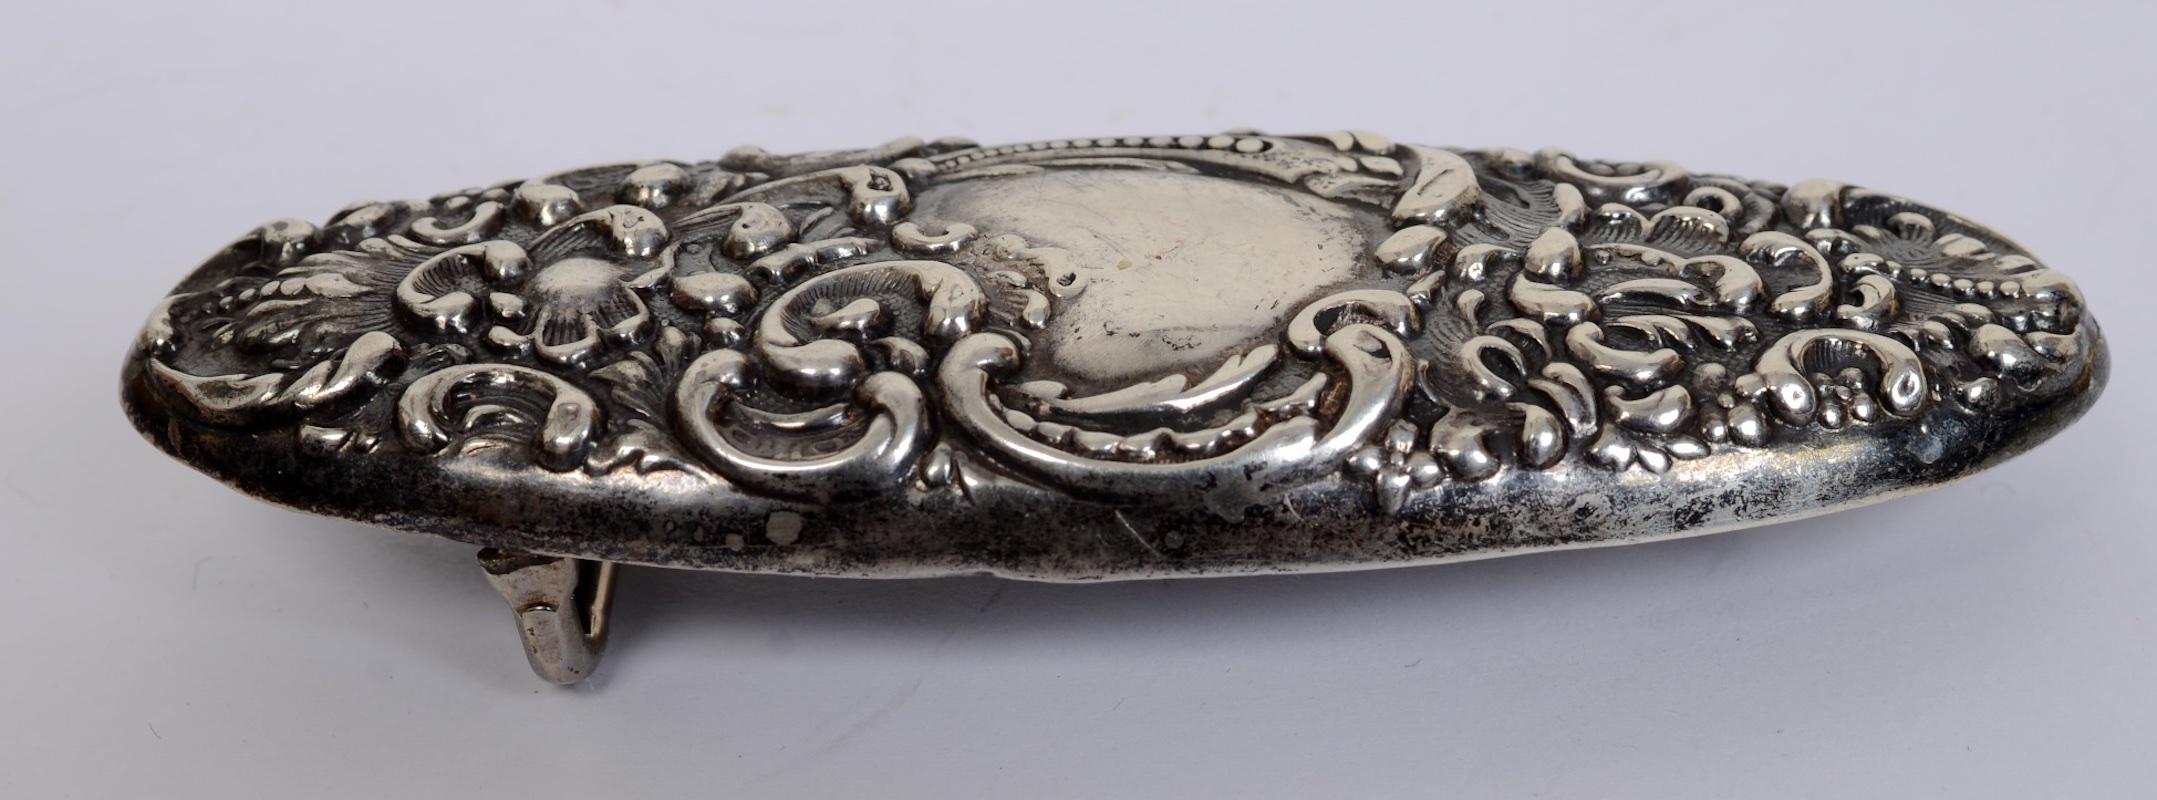 Black Sterling Silver Floral and Leaf Decorated Sash Belt Buckle, c1840 For Sale